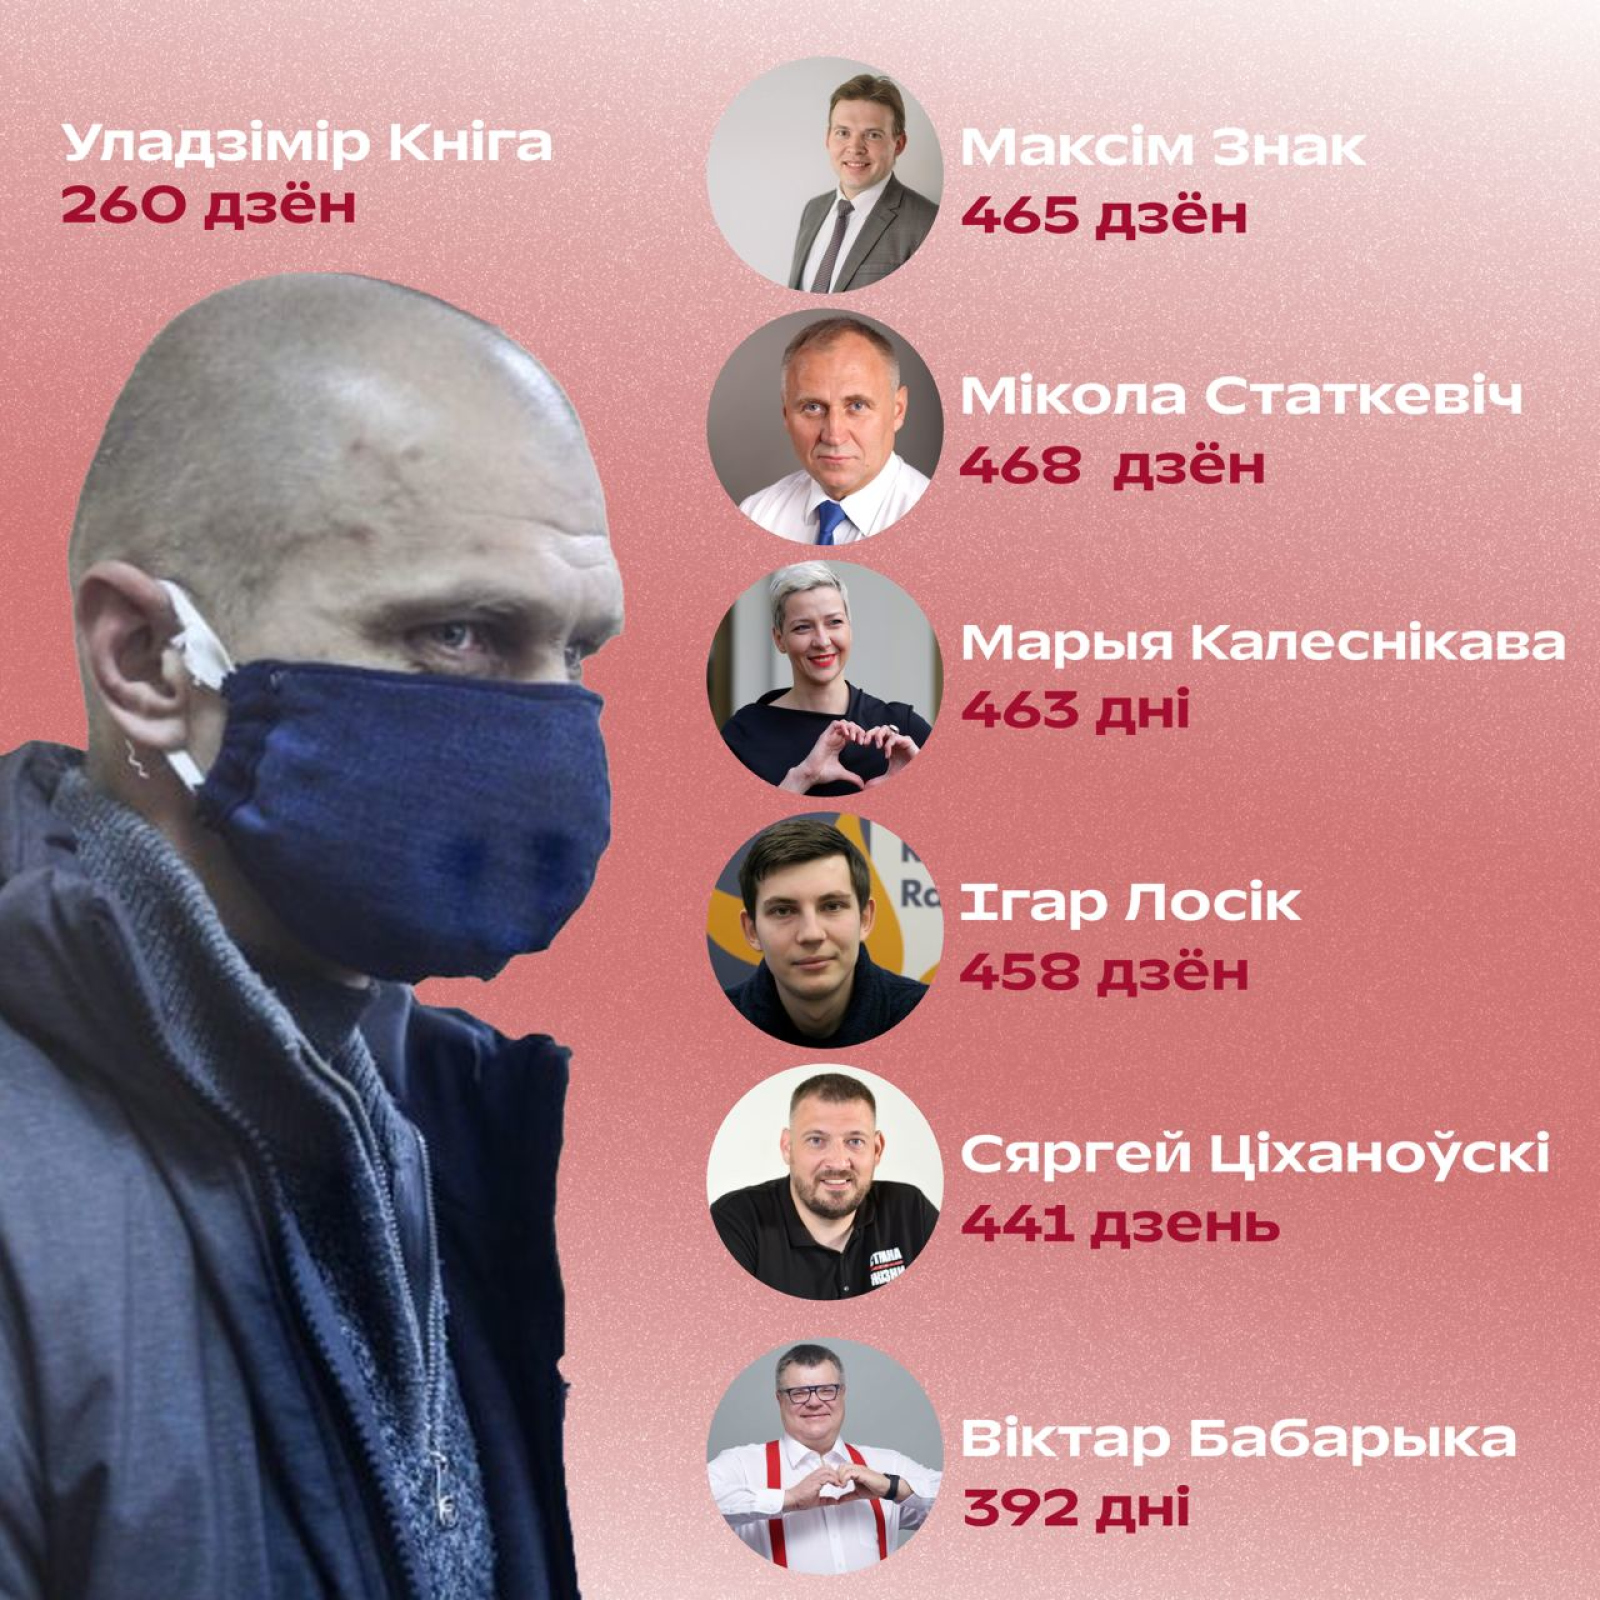 260 дней нет информации о Владимире Книге